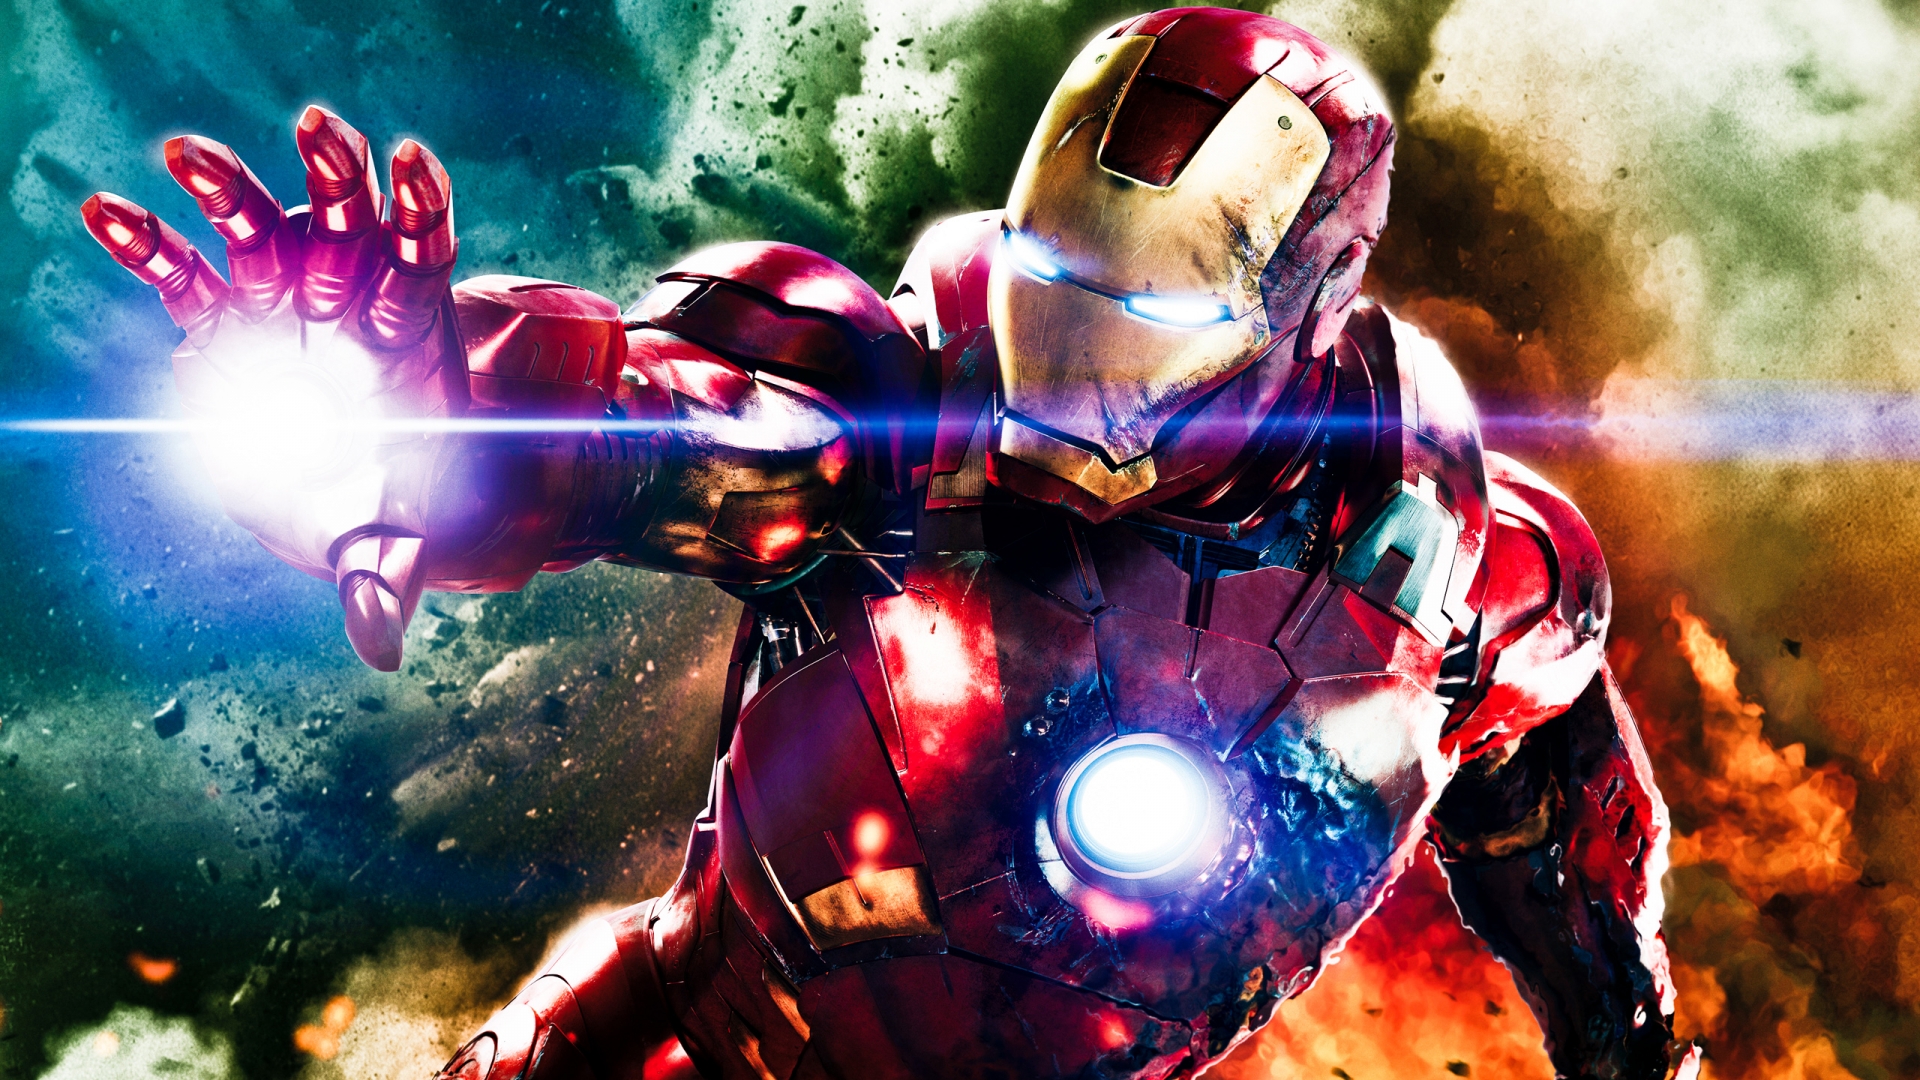 Avengers HD Wallpapers 1080p - WallpaperSafari